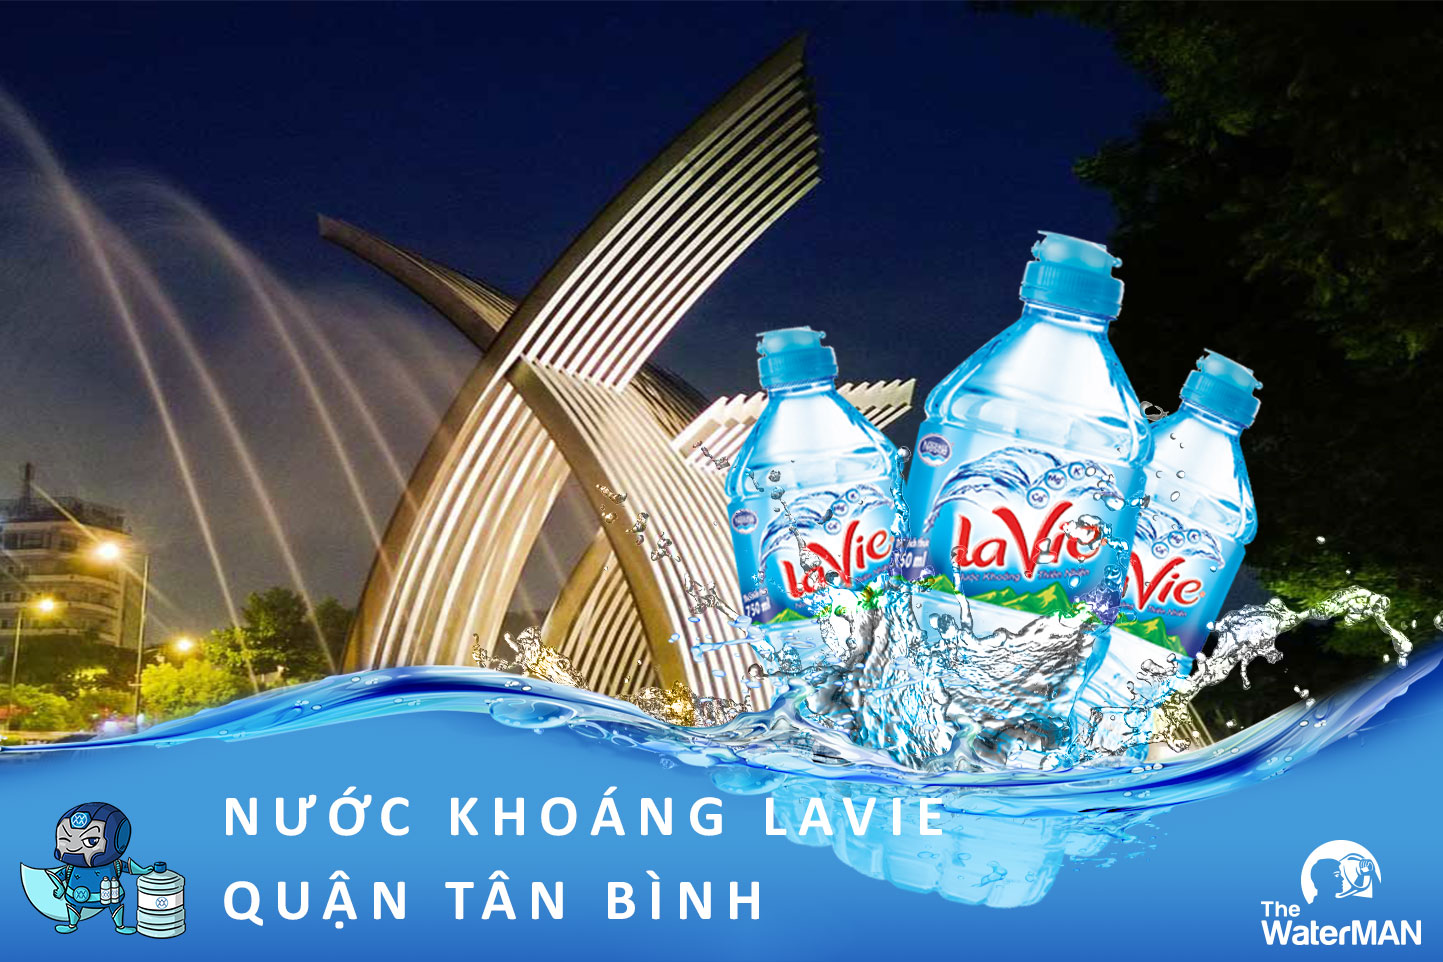 Đặt nước khoáng Lavie chính hãng ở quận Tân Bình